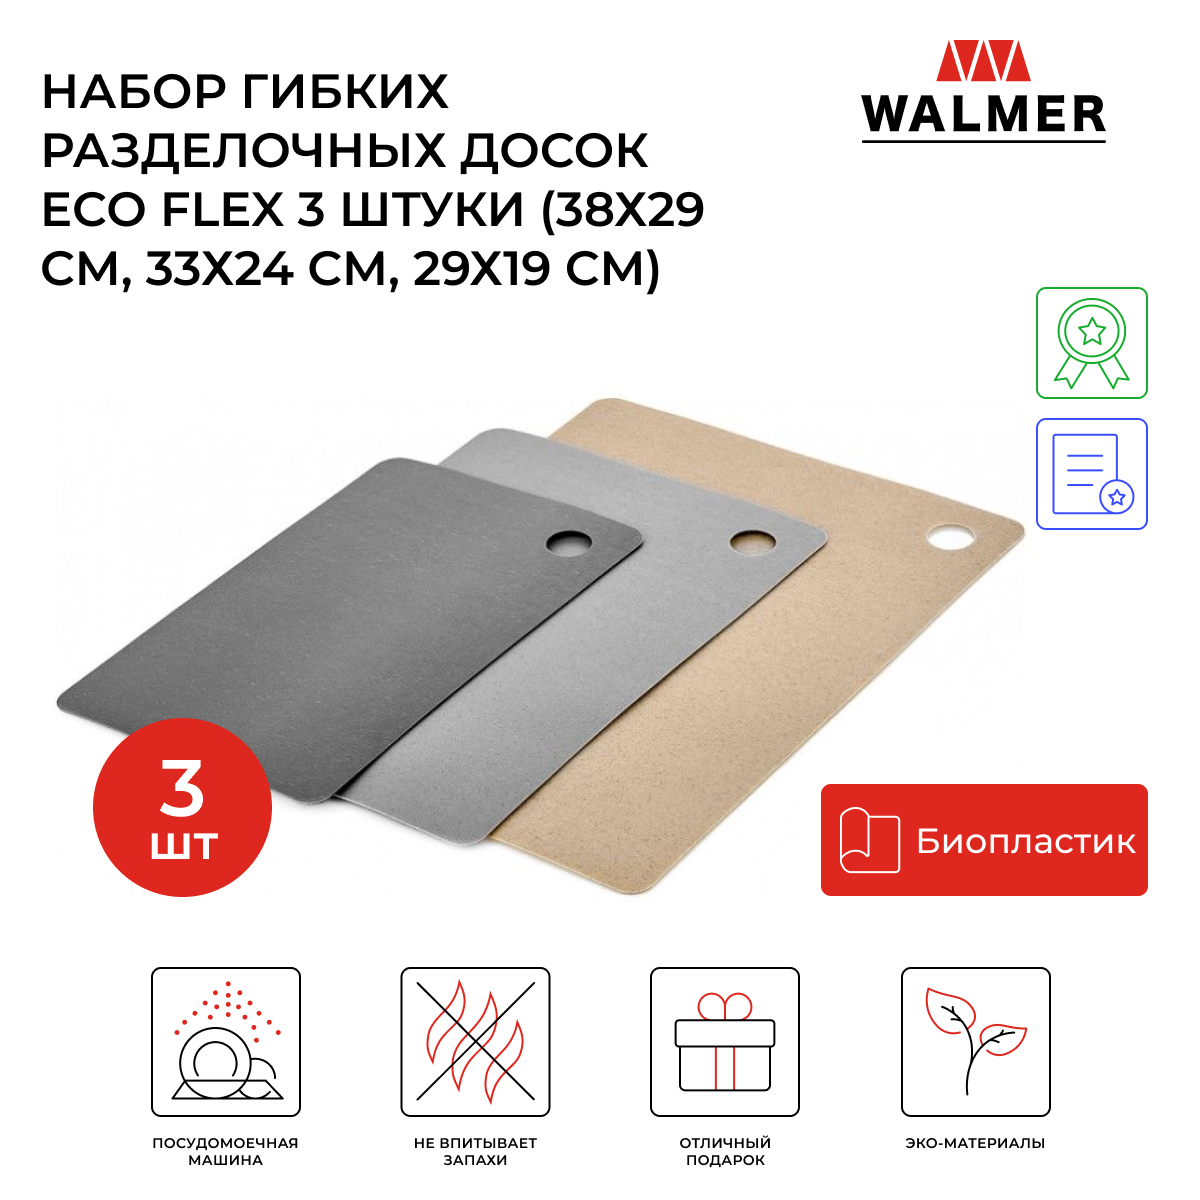 Набор разделочных досок Walmer Eco Flex 38x29, разноцветный, 3 шт.